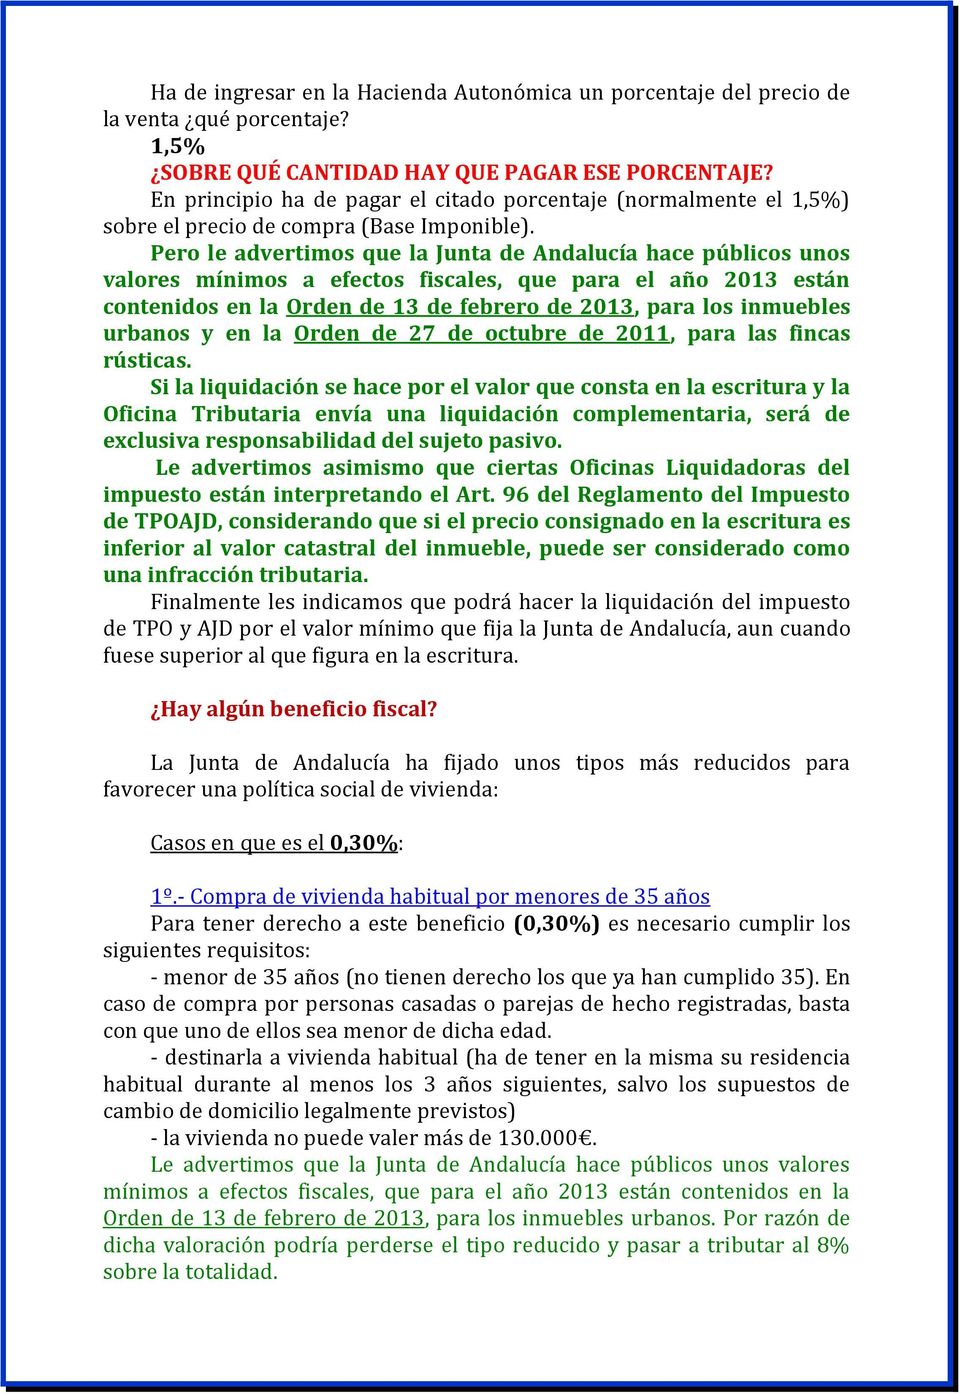 Pero le advertimos que la Junta de Andalucía hace públicos unos valores mínimos a efectos fiscales, que para el año 2013 están contenidos en la Orden de 13 de febrero de 2013, para los inmuebles